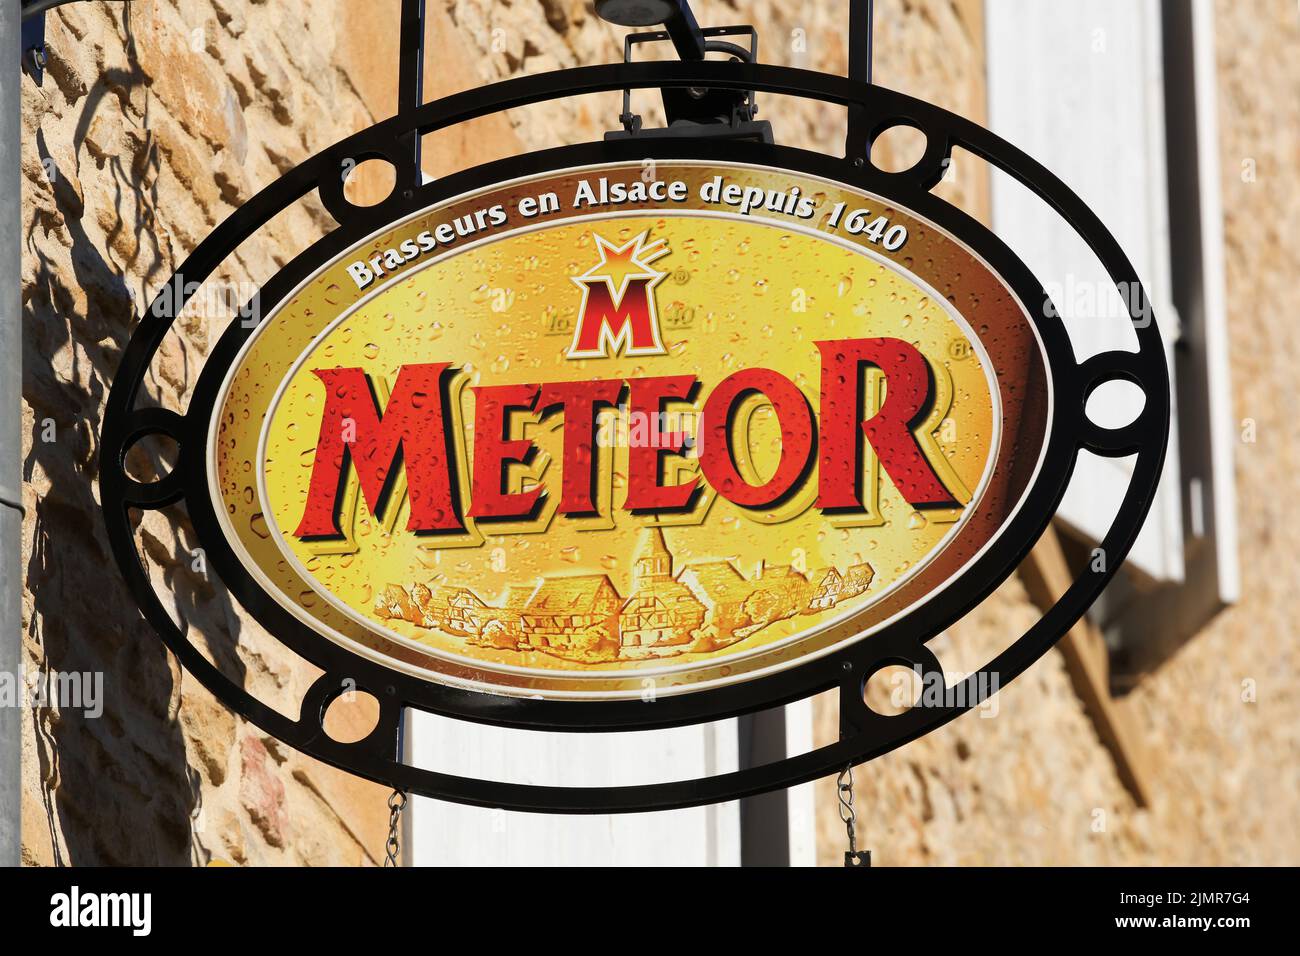 Gleize, France - 19 janvier 2021: Meteor est une brasserie alsacienne indépendante fondée en 1640. Il est situé à Hochfelden, dans le Bas-Rhin, en France Banque D'Images